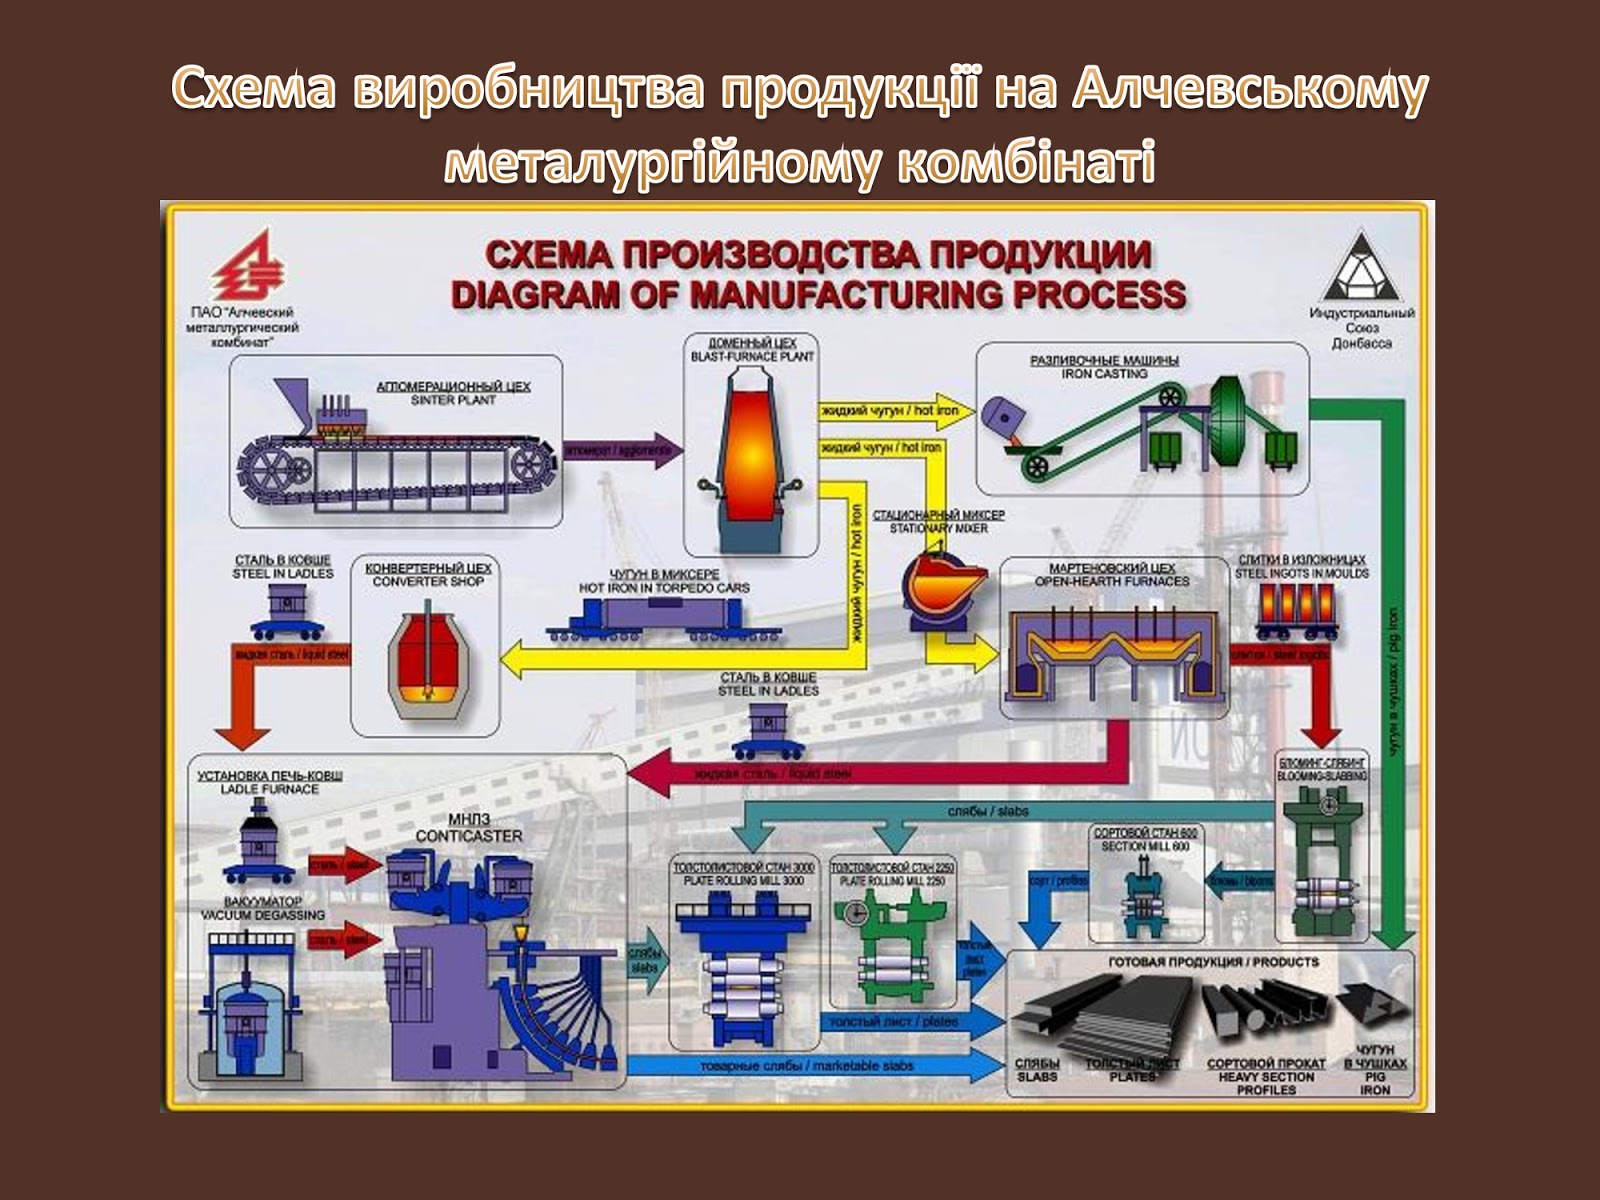 Производство товаров и производство услуг составляют. Texnologicheskaya sxema proizvodstva metalla. Технологическая схема металлургического производства. Технологическая схема сталеплавильного производства. Технологическая схема производства металла.